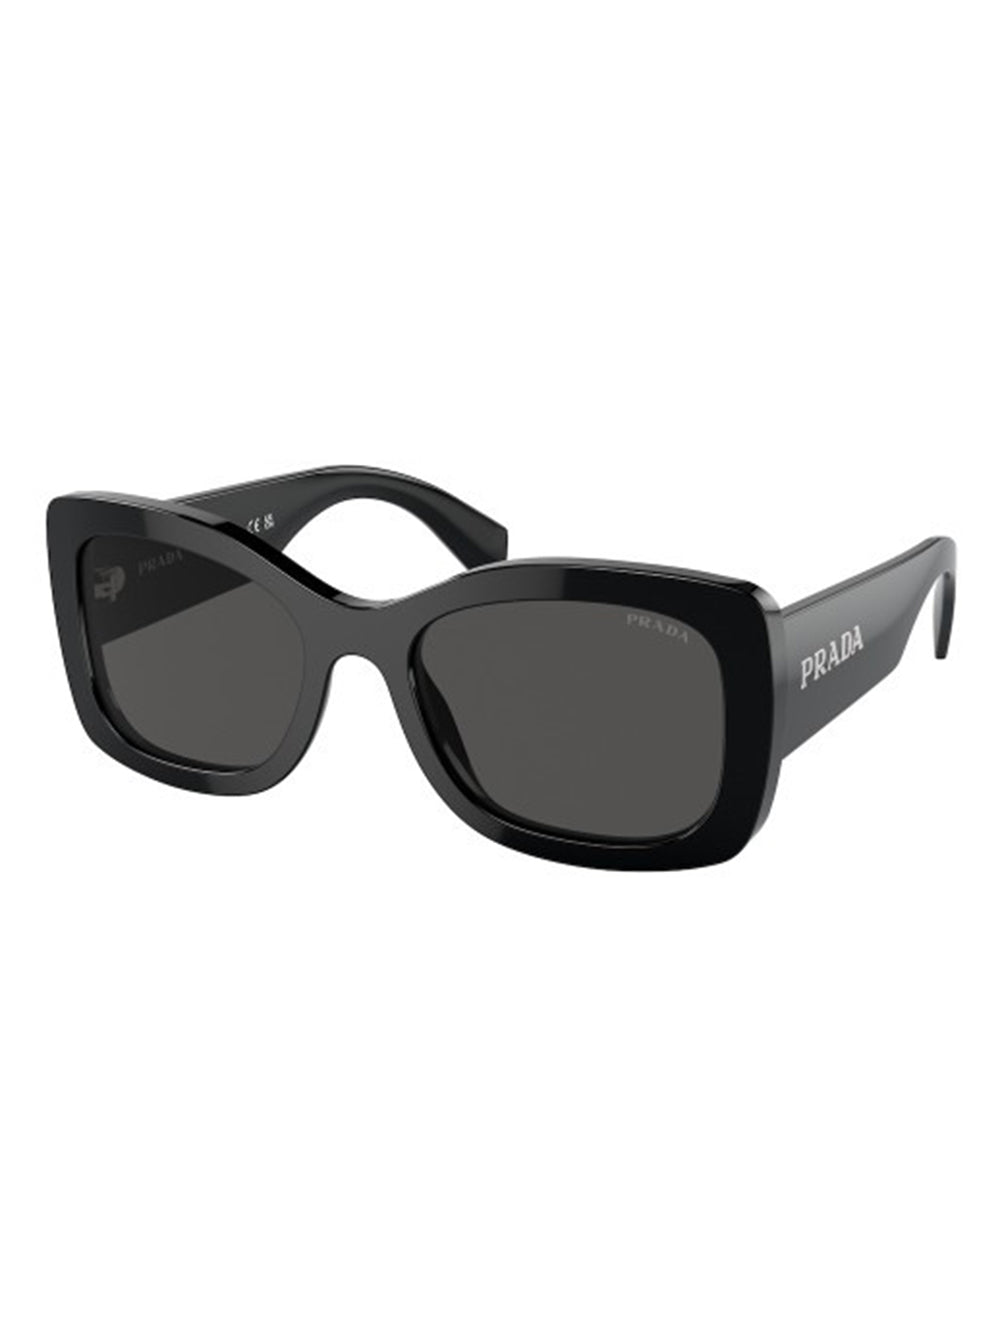 Prada Sunglasses 0PR A08S (More Colors)